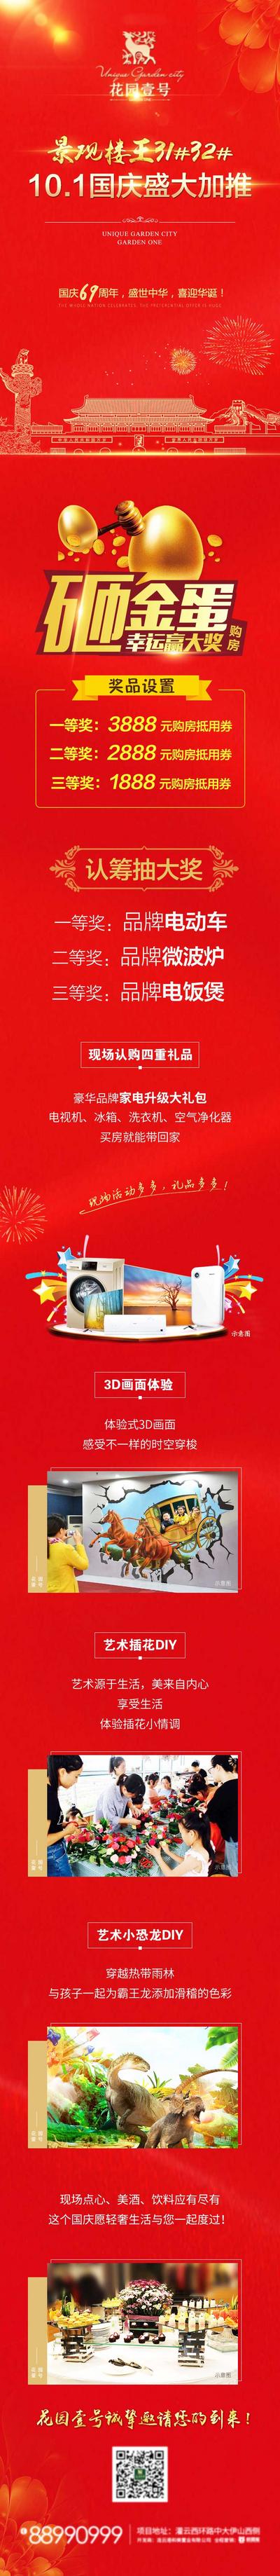 南门网 地产红色国庆活动卖点微信长图海报